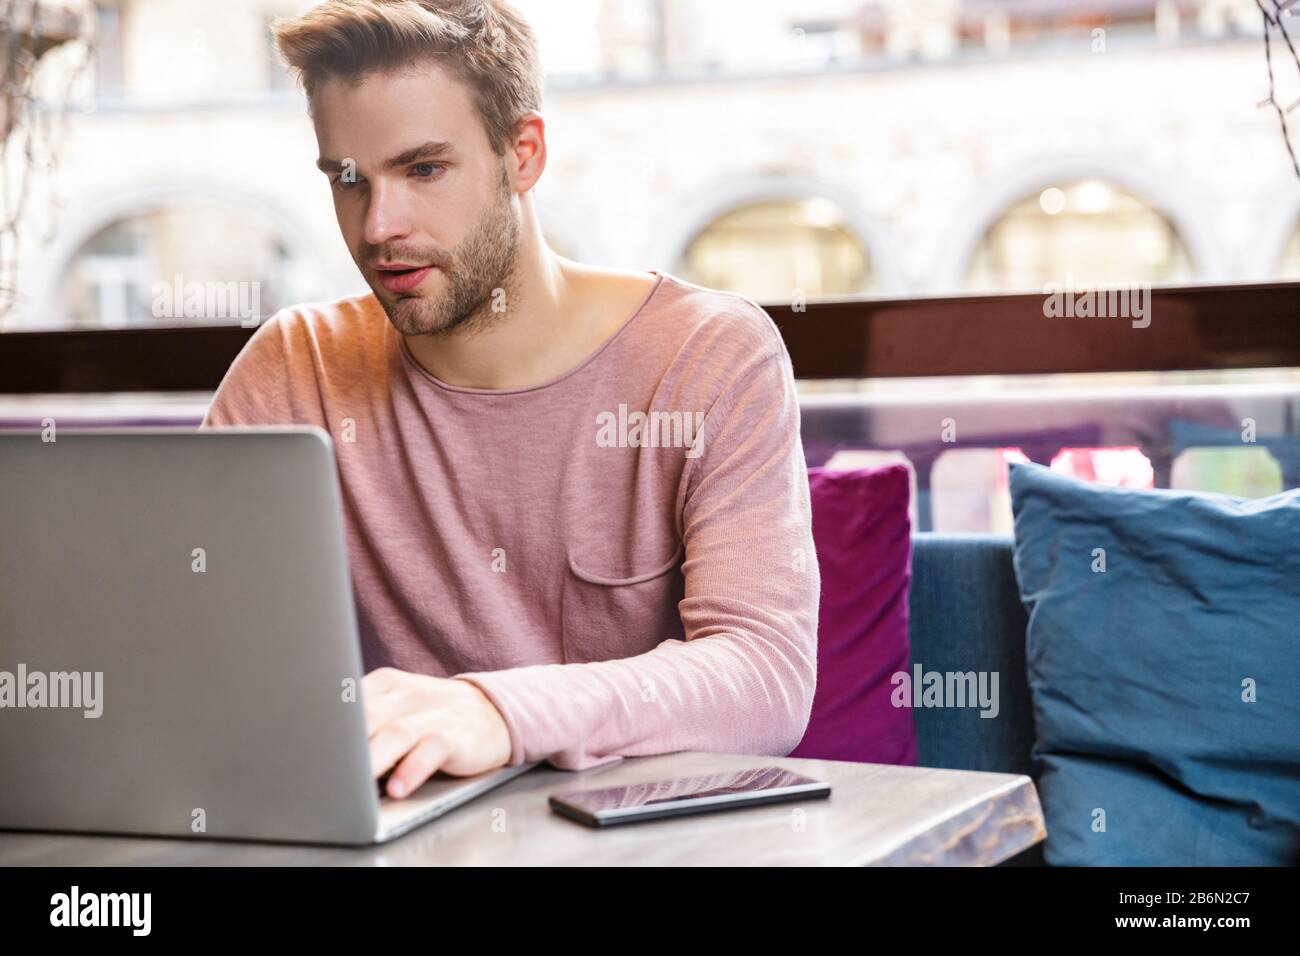 Gutaussehender junger Mann, der während des Aufenthalts im Café am Laptop arbeitet Stockfoto